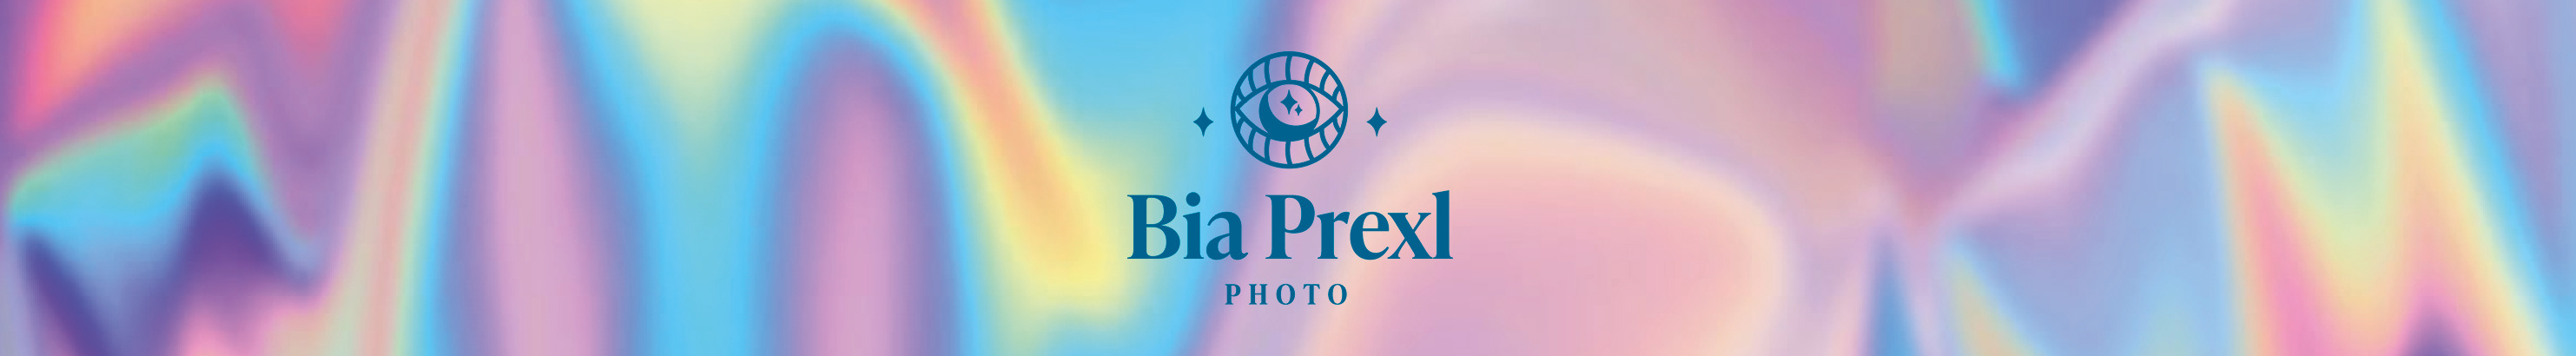 Beatriz Bertelli Prexl's profile banner